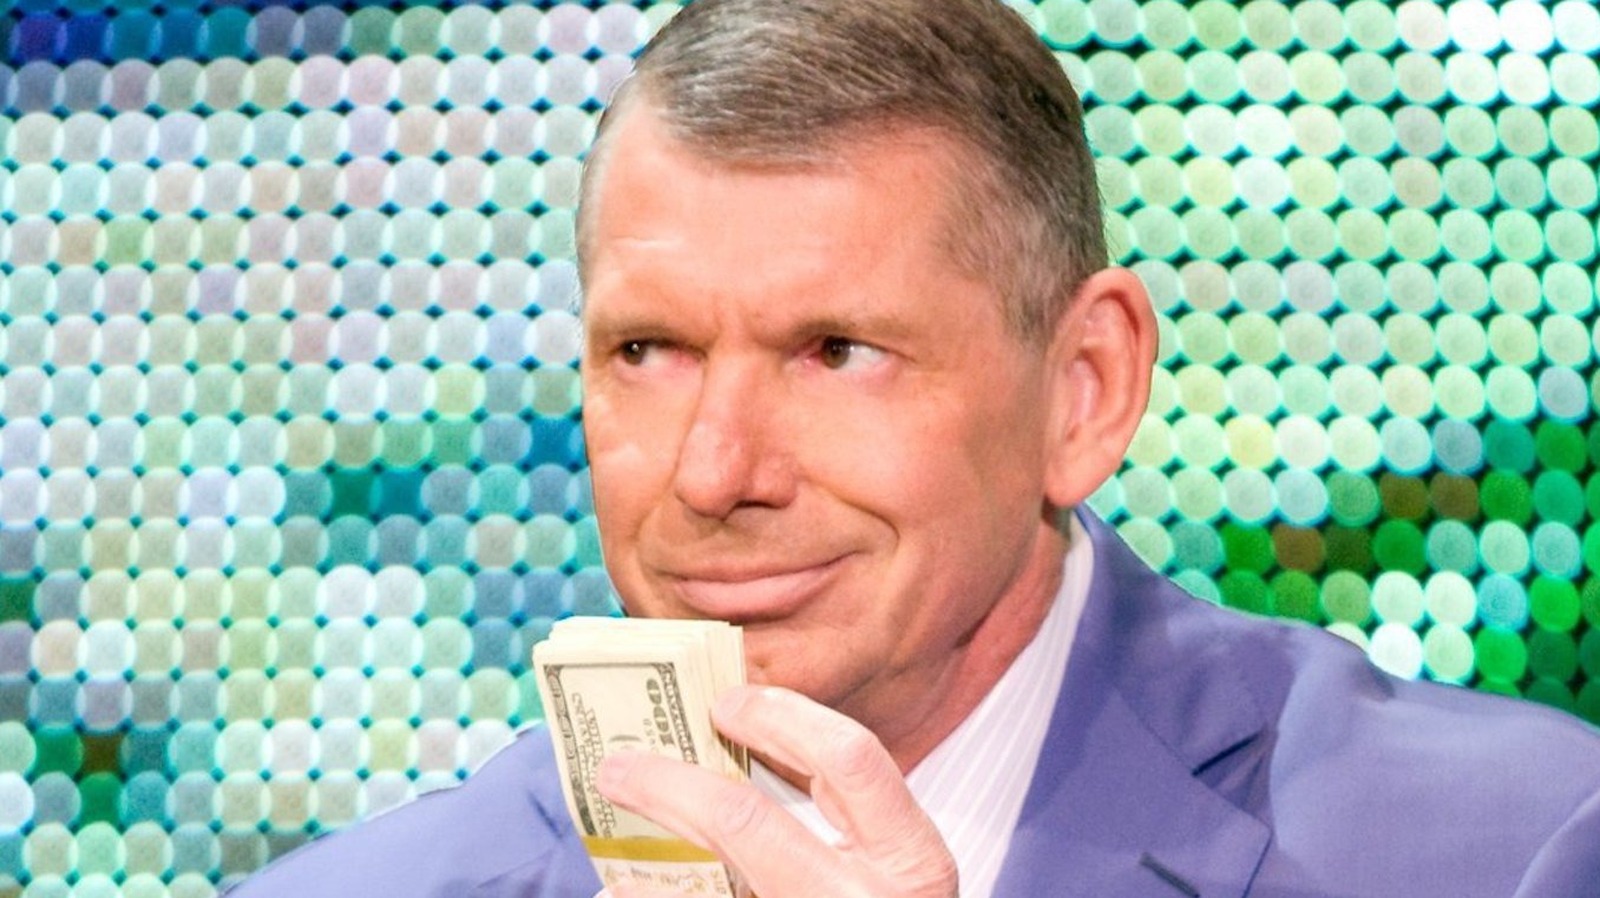 Según los informes, Vince McMahon ha hecho varios intentos de romper The New Day en WWE